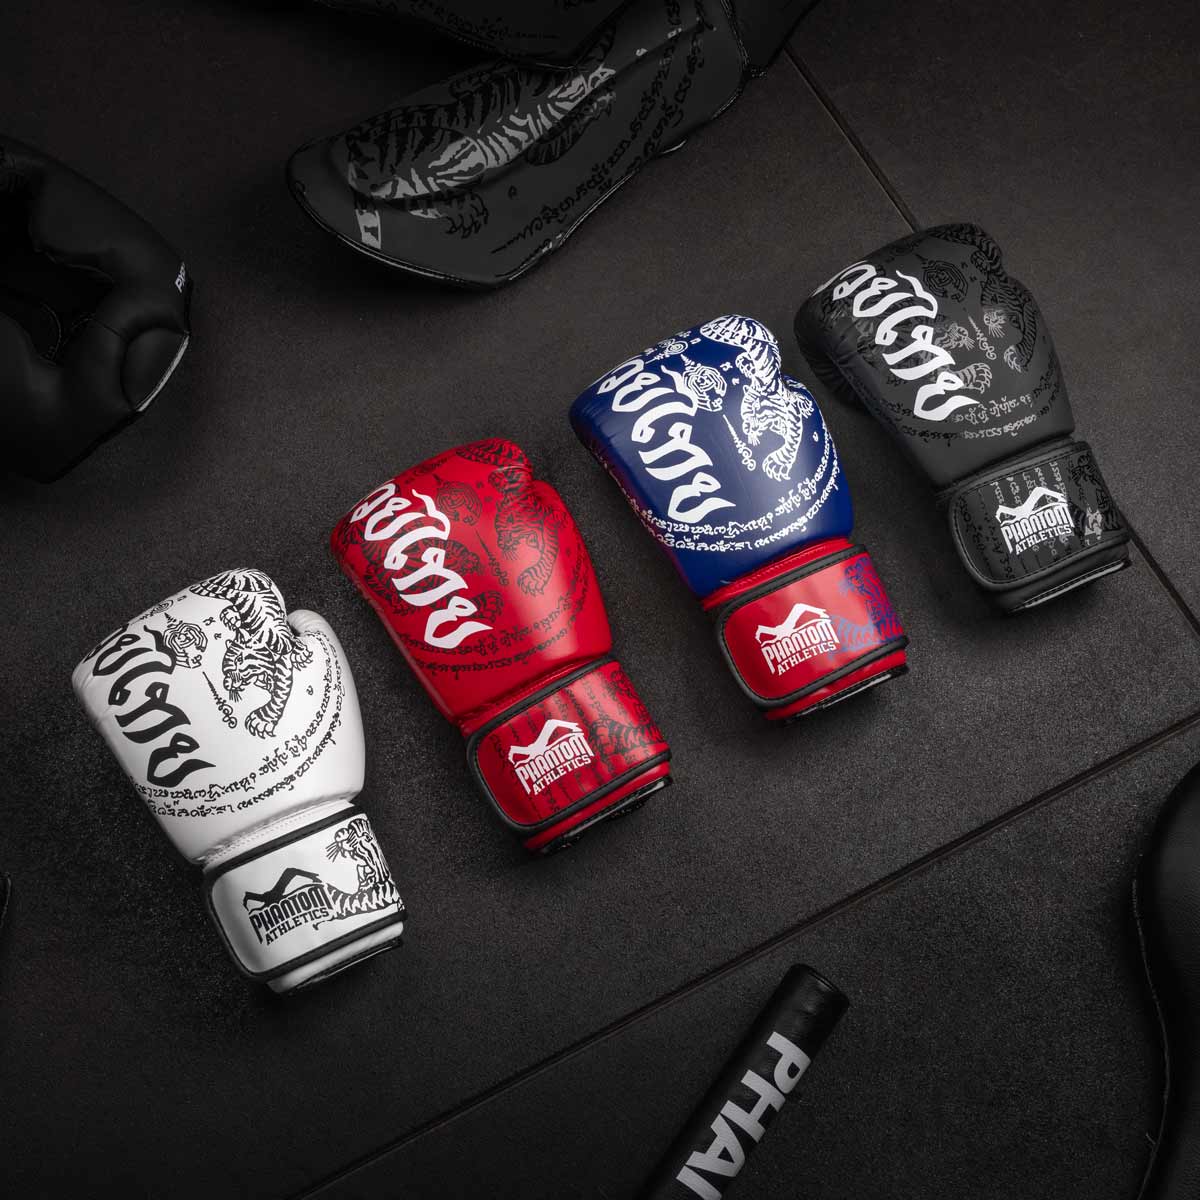 Die Phantom Muay Thai Boxhandschuhe gibt es in mehreren verschiedenen Farben.